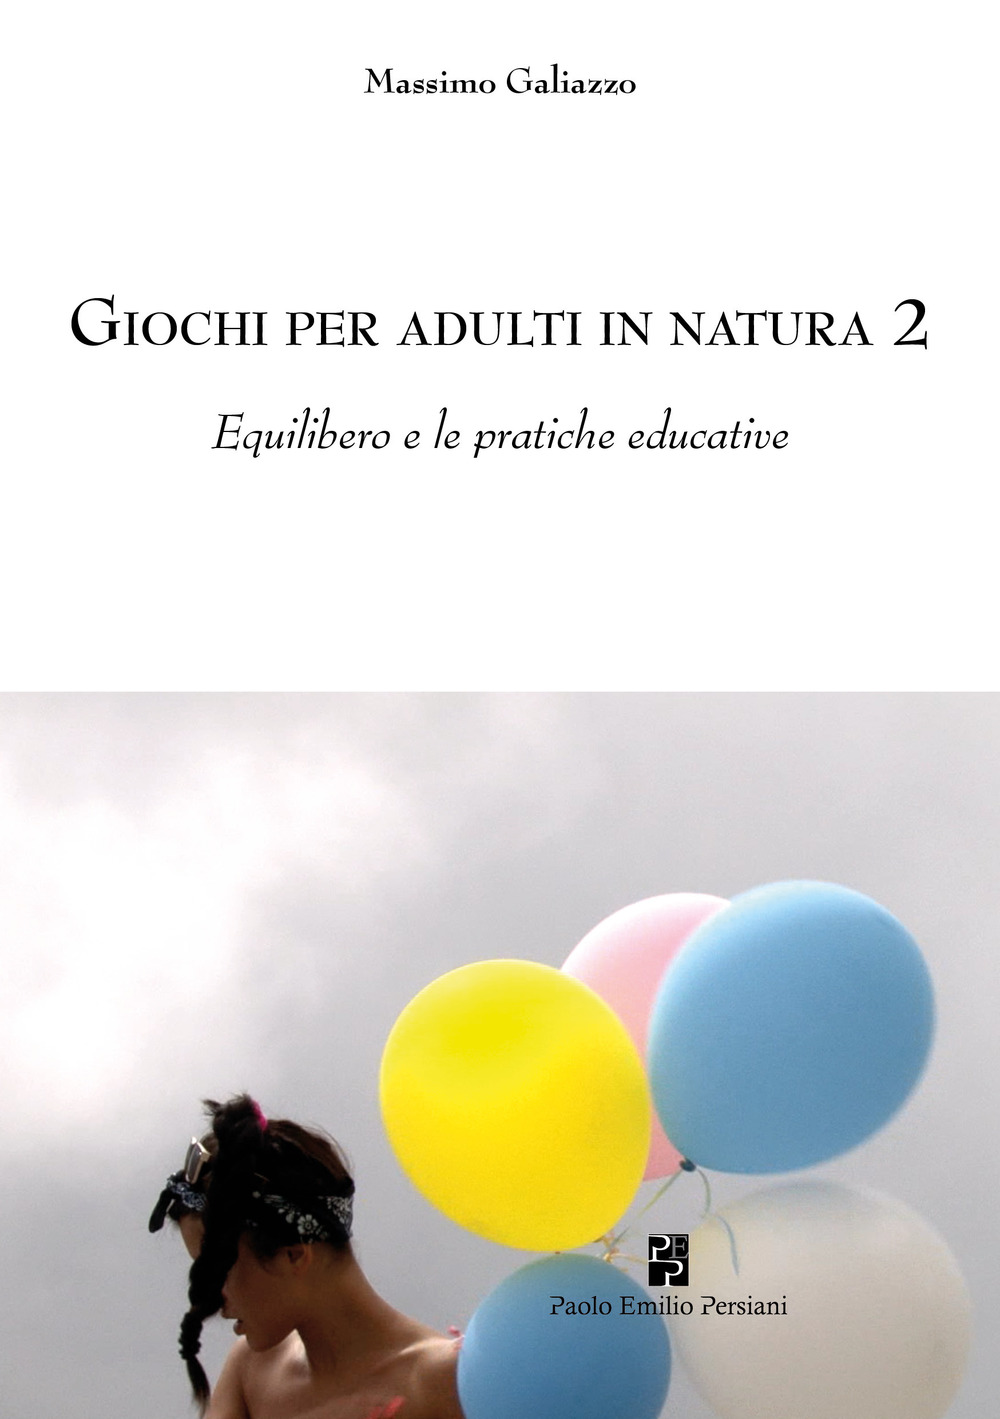 Giochi per adulti in natura. Vol. 2: Equilibero e le pratiche educative